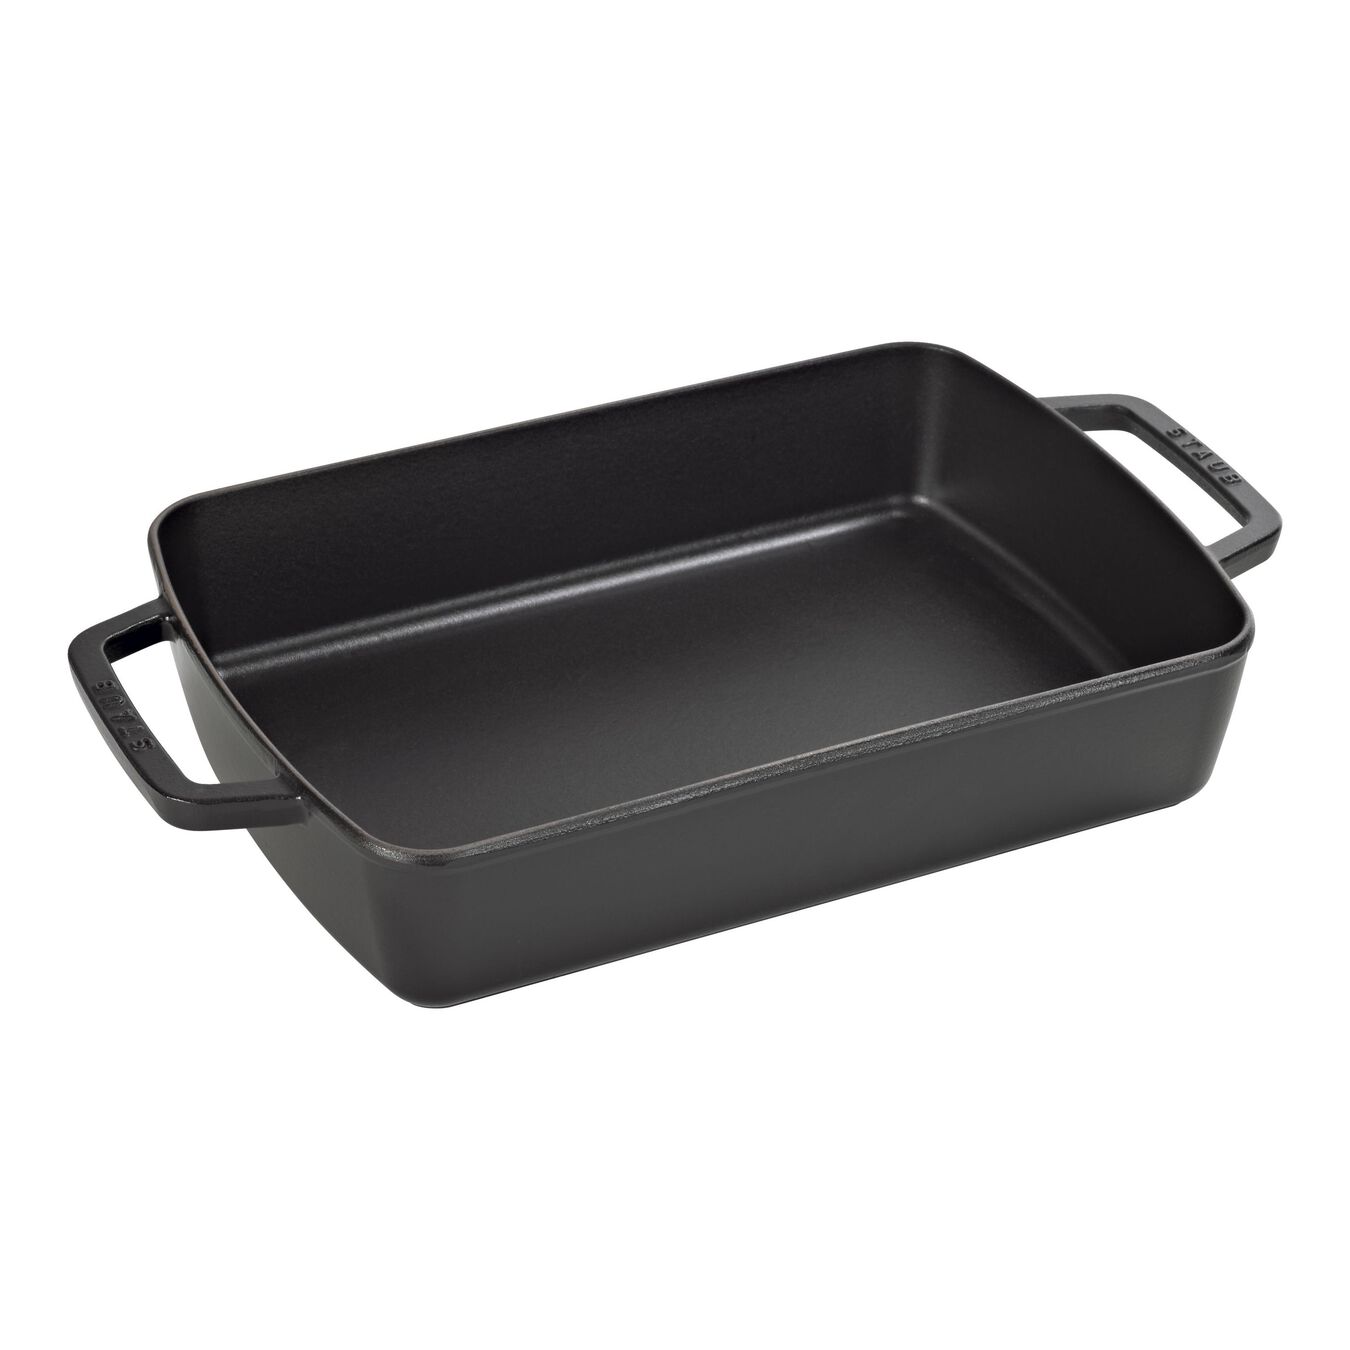 12-x 8-inch, rectangular, Roasting Pan, black matte,,large 1